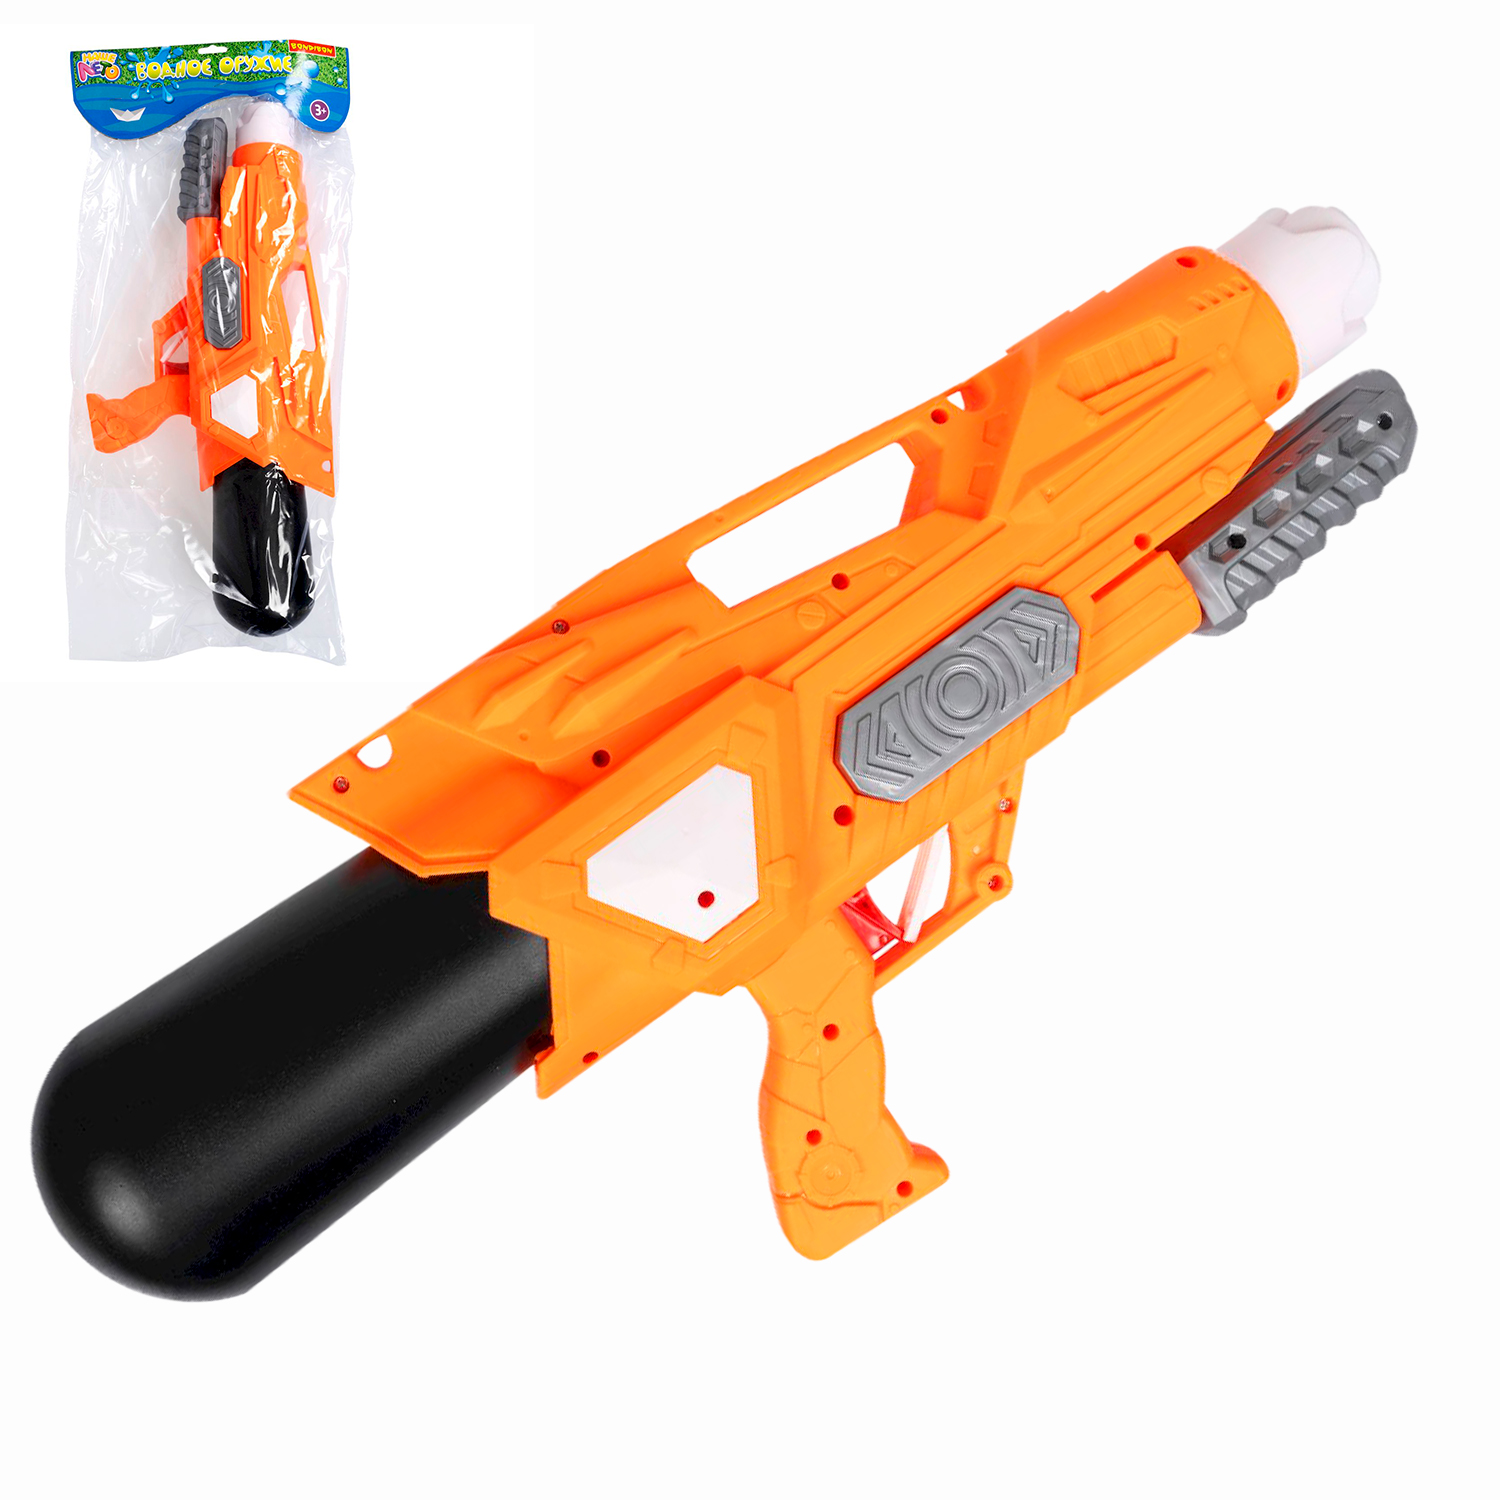 Водный пистолет игрушечный с помпой Bondibon Наше Лето, оранжевый, ВВ5801 водный пистолет игрушечный oubaoloon ao 2087b шторм